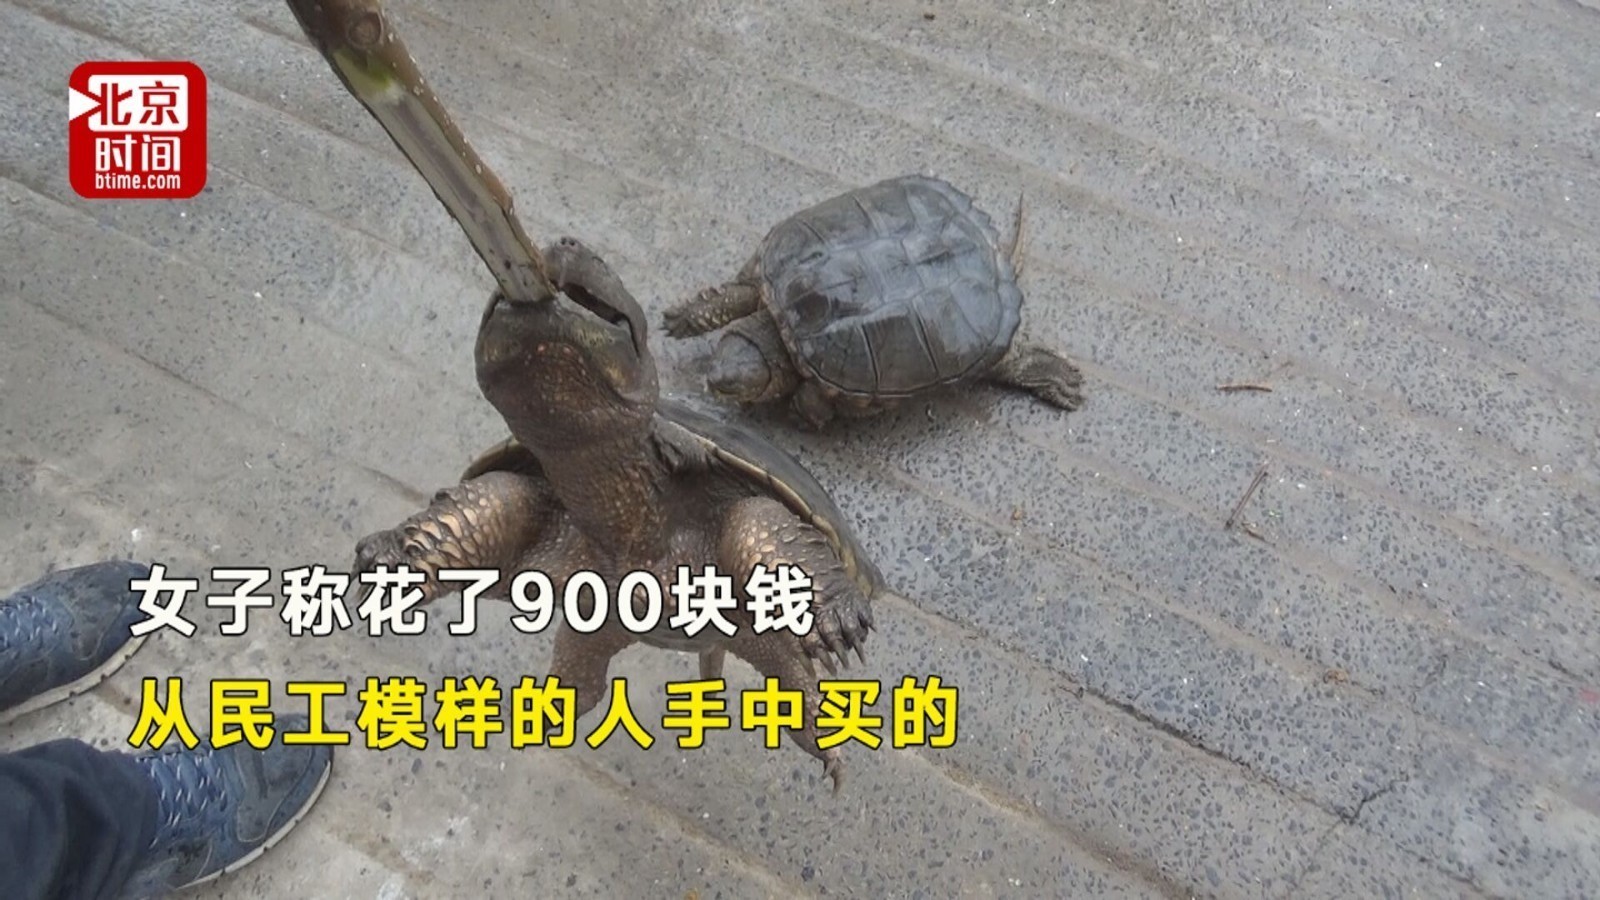 女子花近千元买龟放生 野生动物救助站：好心办错事